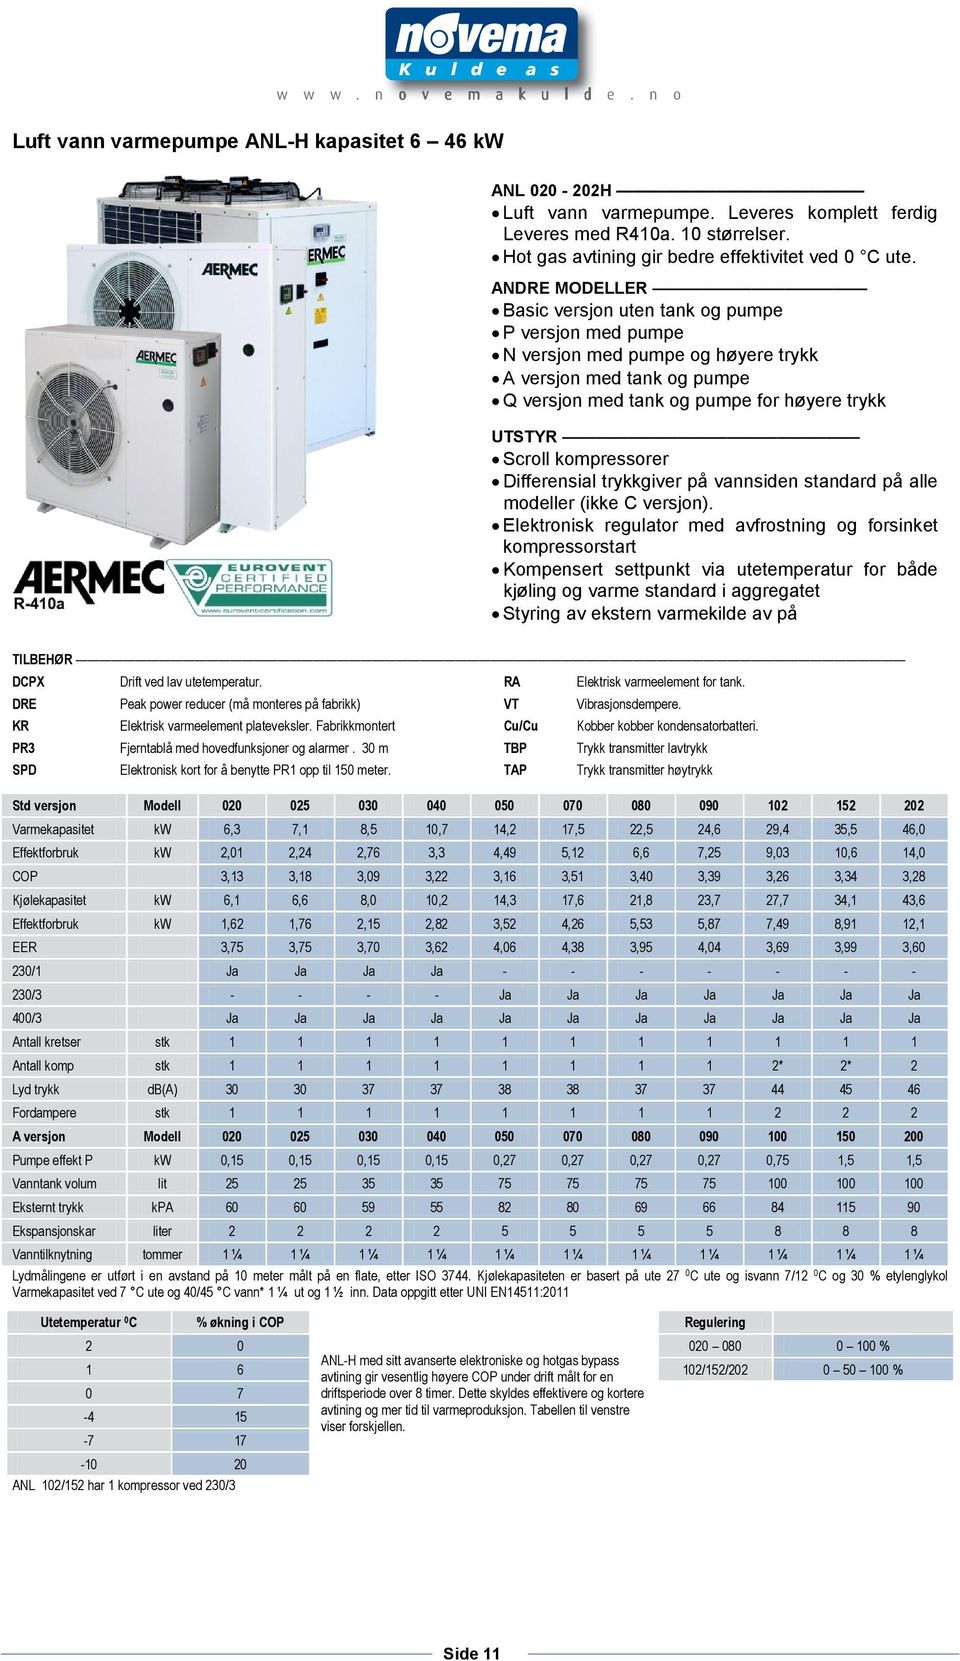 kompressorer Differensial trykkgiver på vannsiden standard på alle modeller (ikke C versjon).